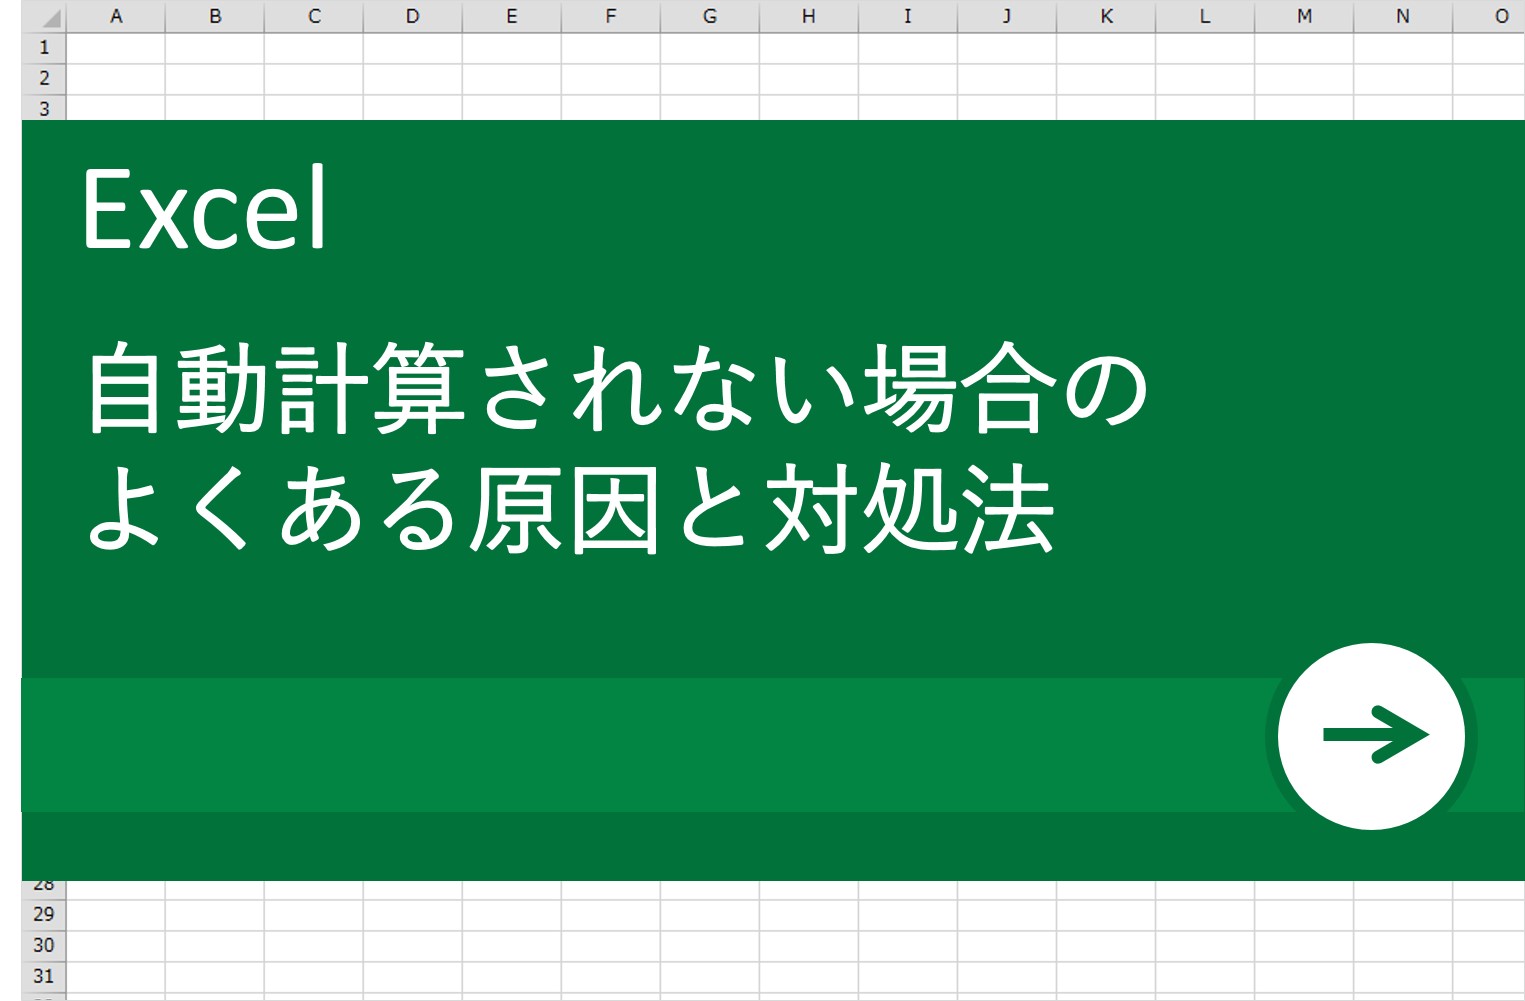 Excel エクセル 術 自動で計算されない よくある原因と対処法 リクナビnextジャーナル